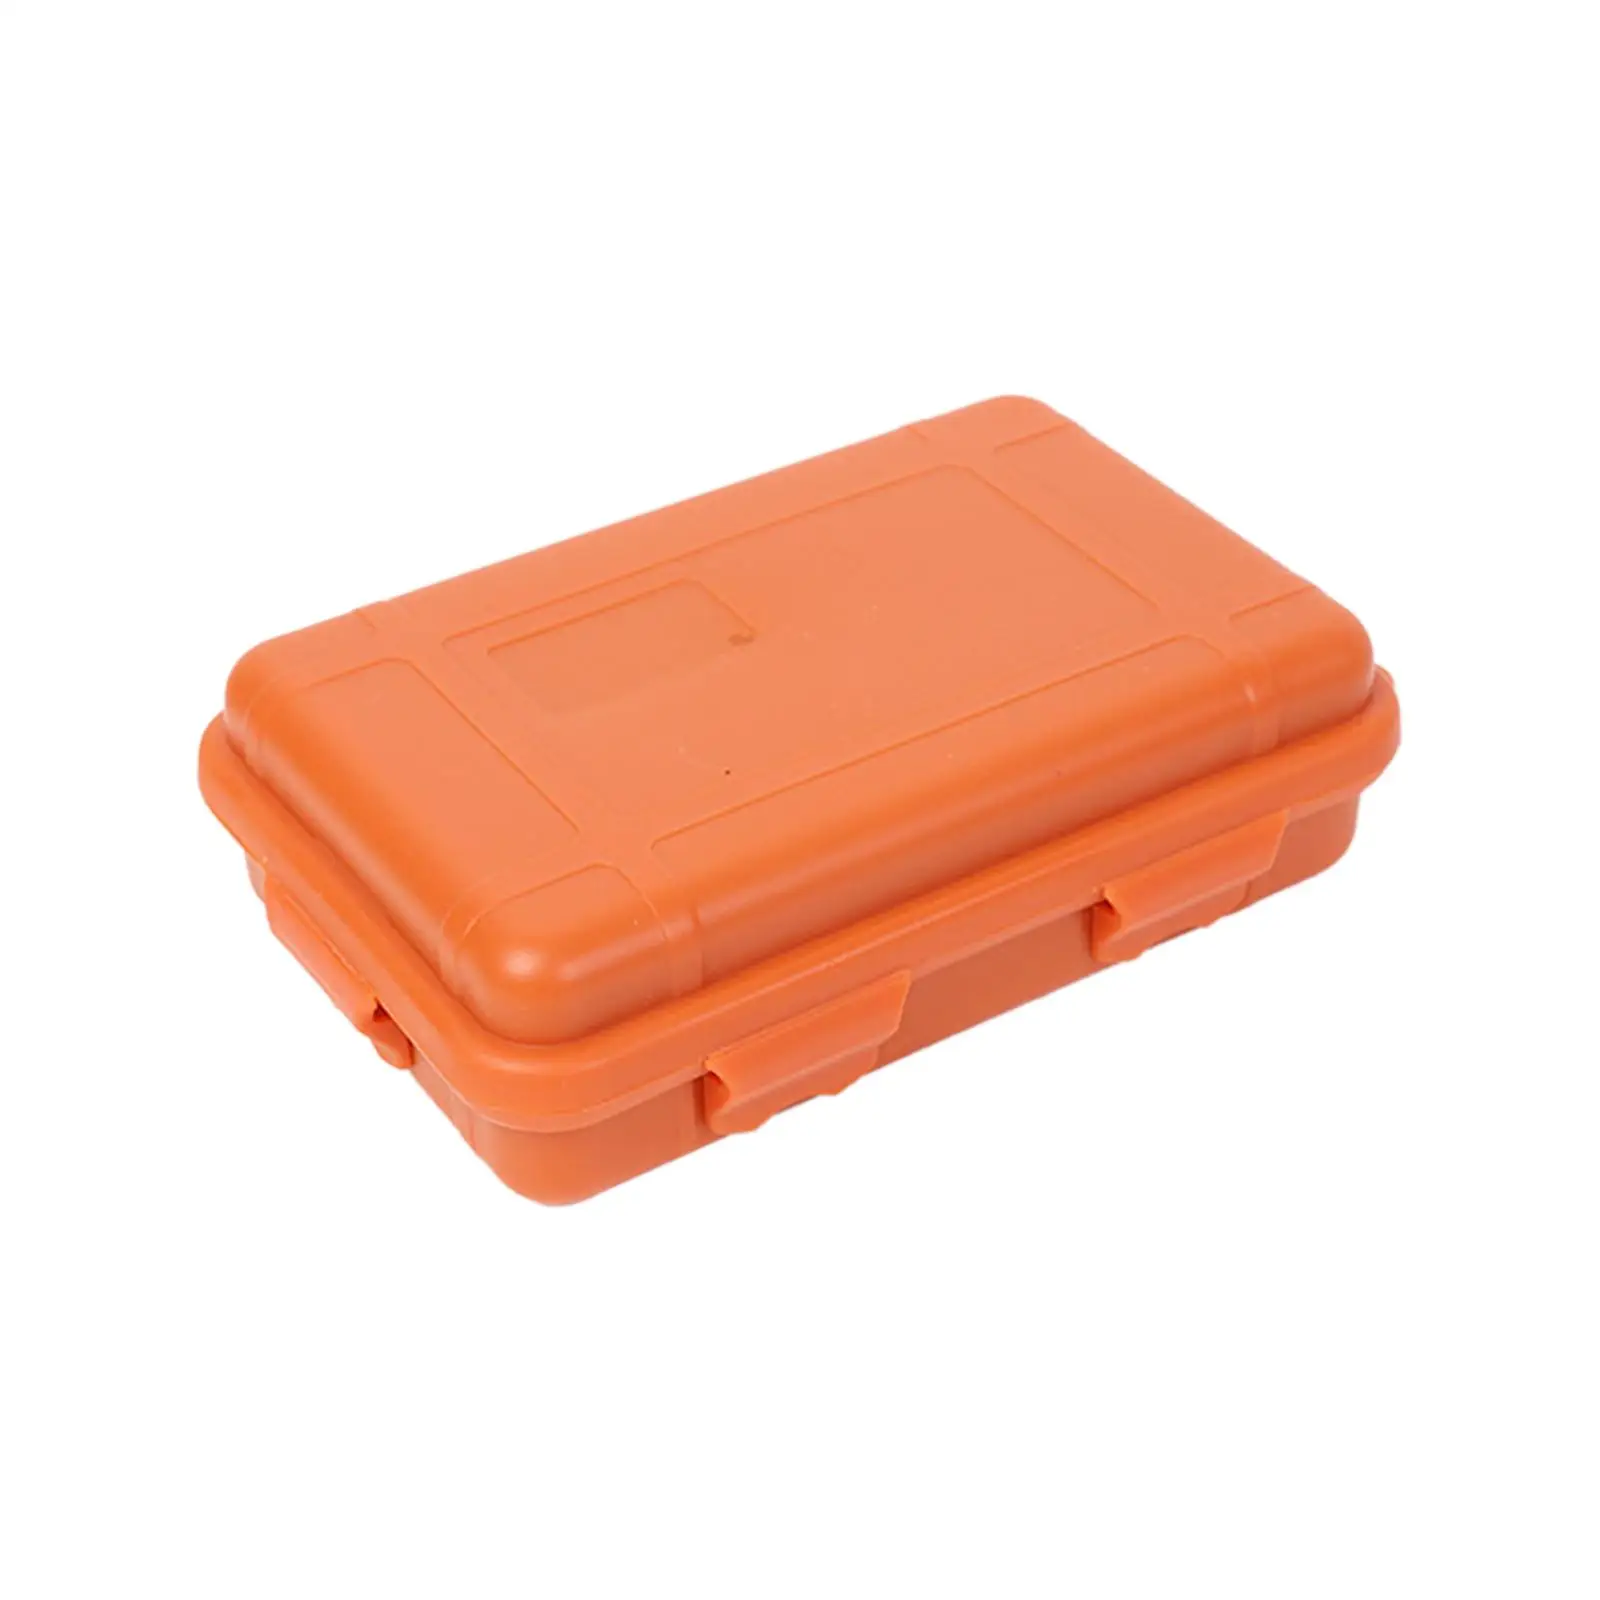 2x Tool Case Storage Case Pressure Resistant Survival Container Organizer